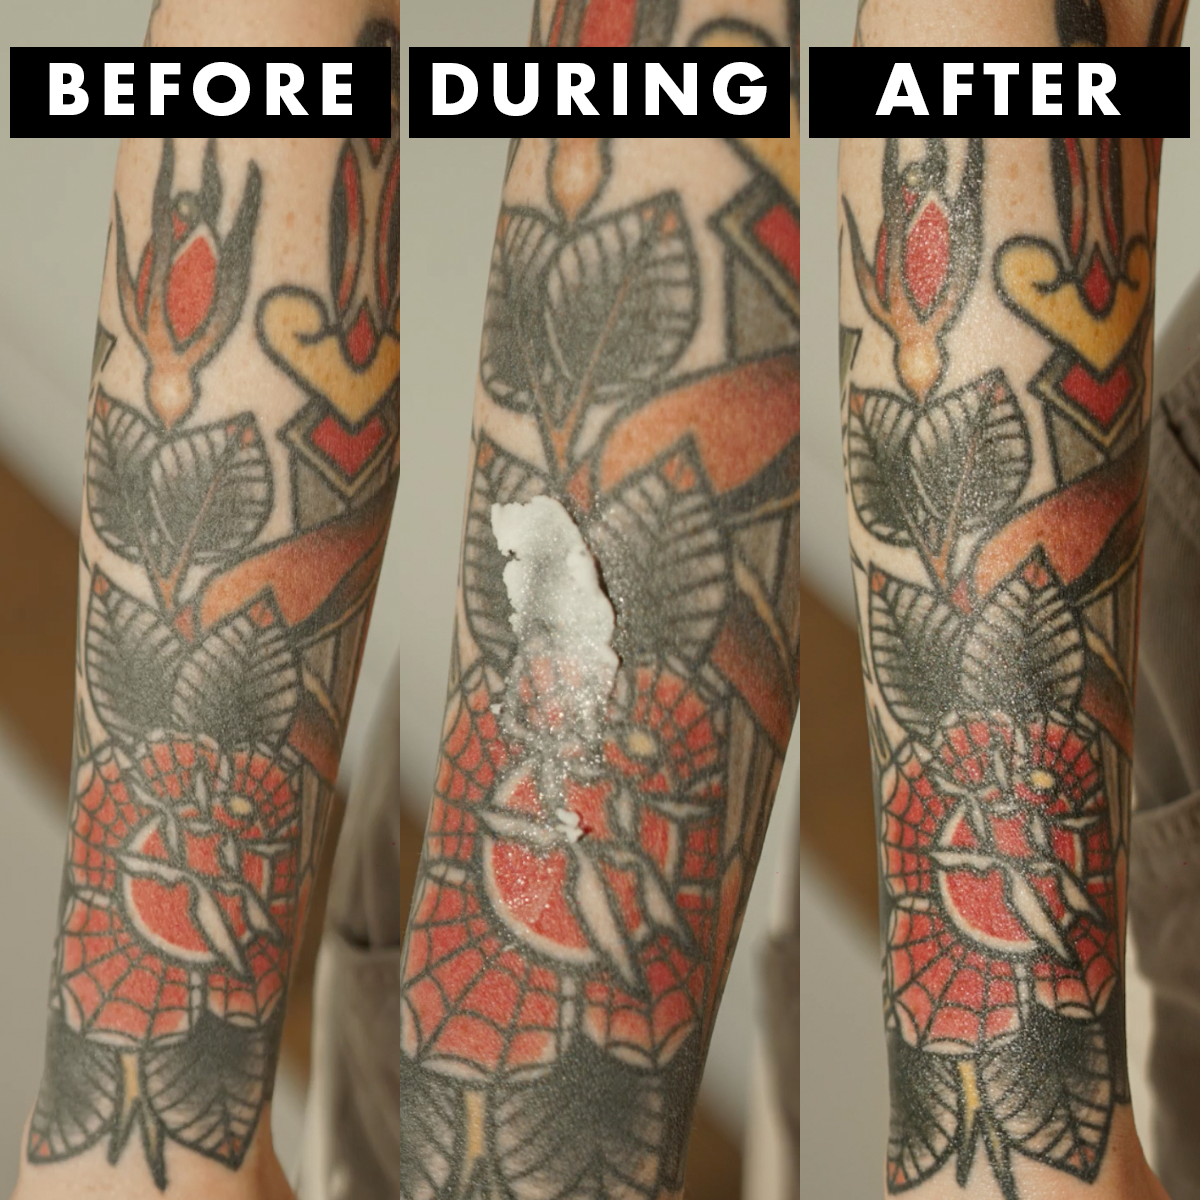 Mad Rabbit Tattoo Video  Tattoos Body art tattoos Body tattoos